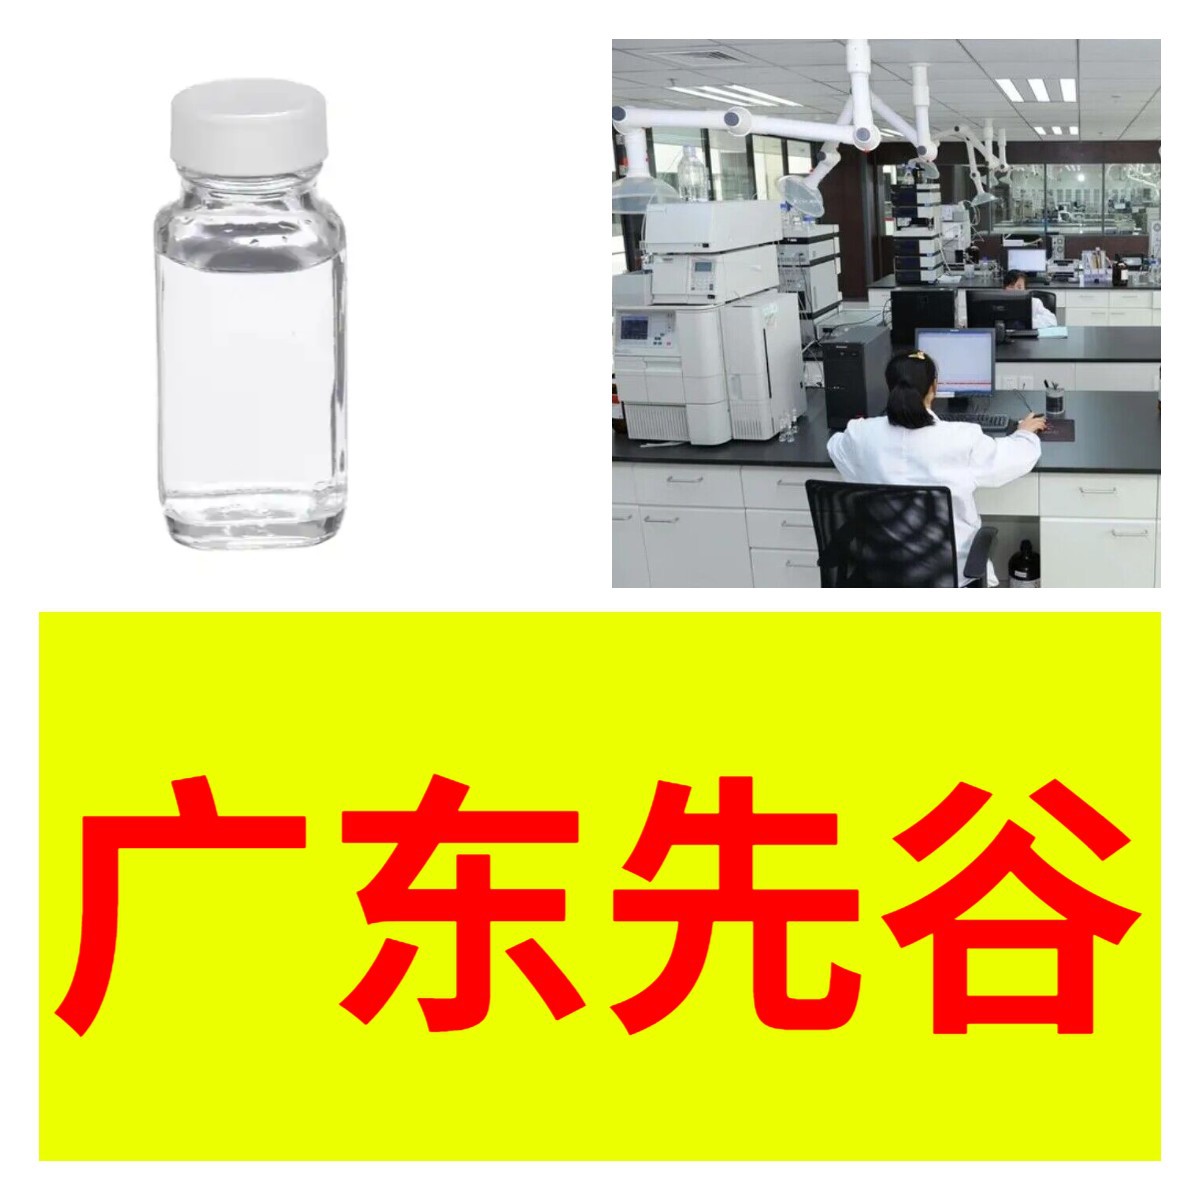 对苯二甲酸二辛脂 对苯二甲酸二异辛酯 24小时服务山东江苏上海